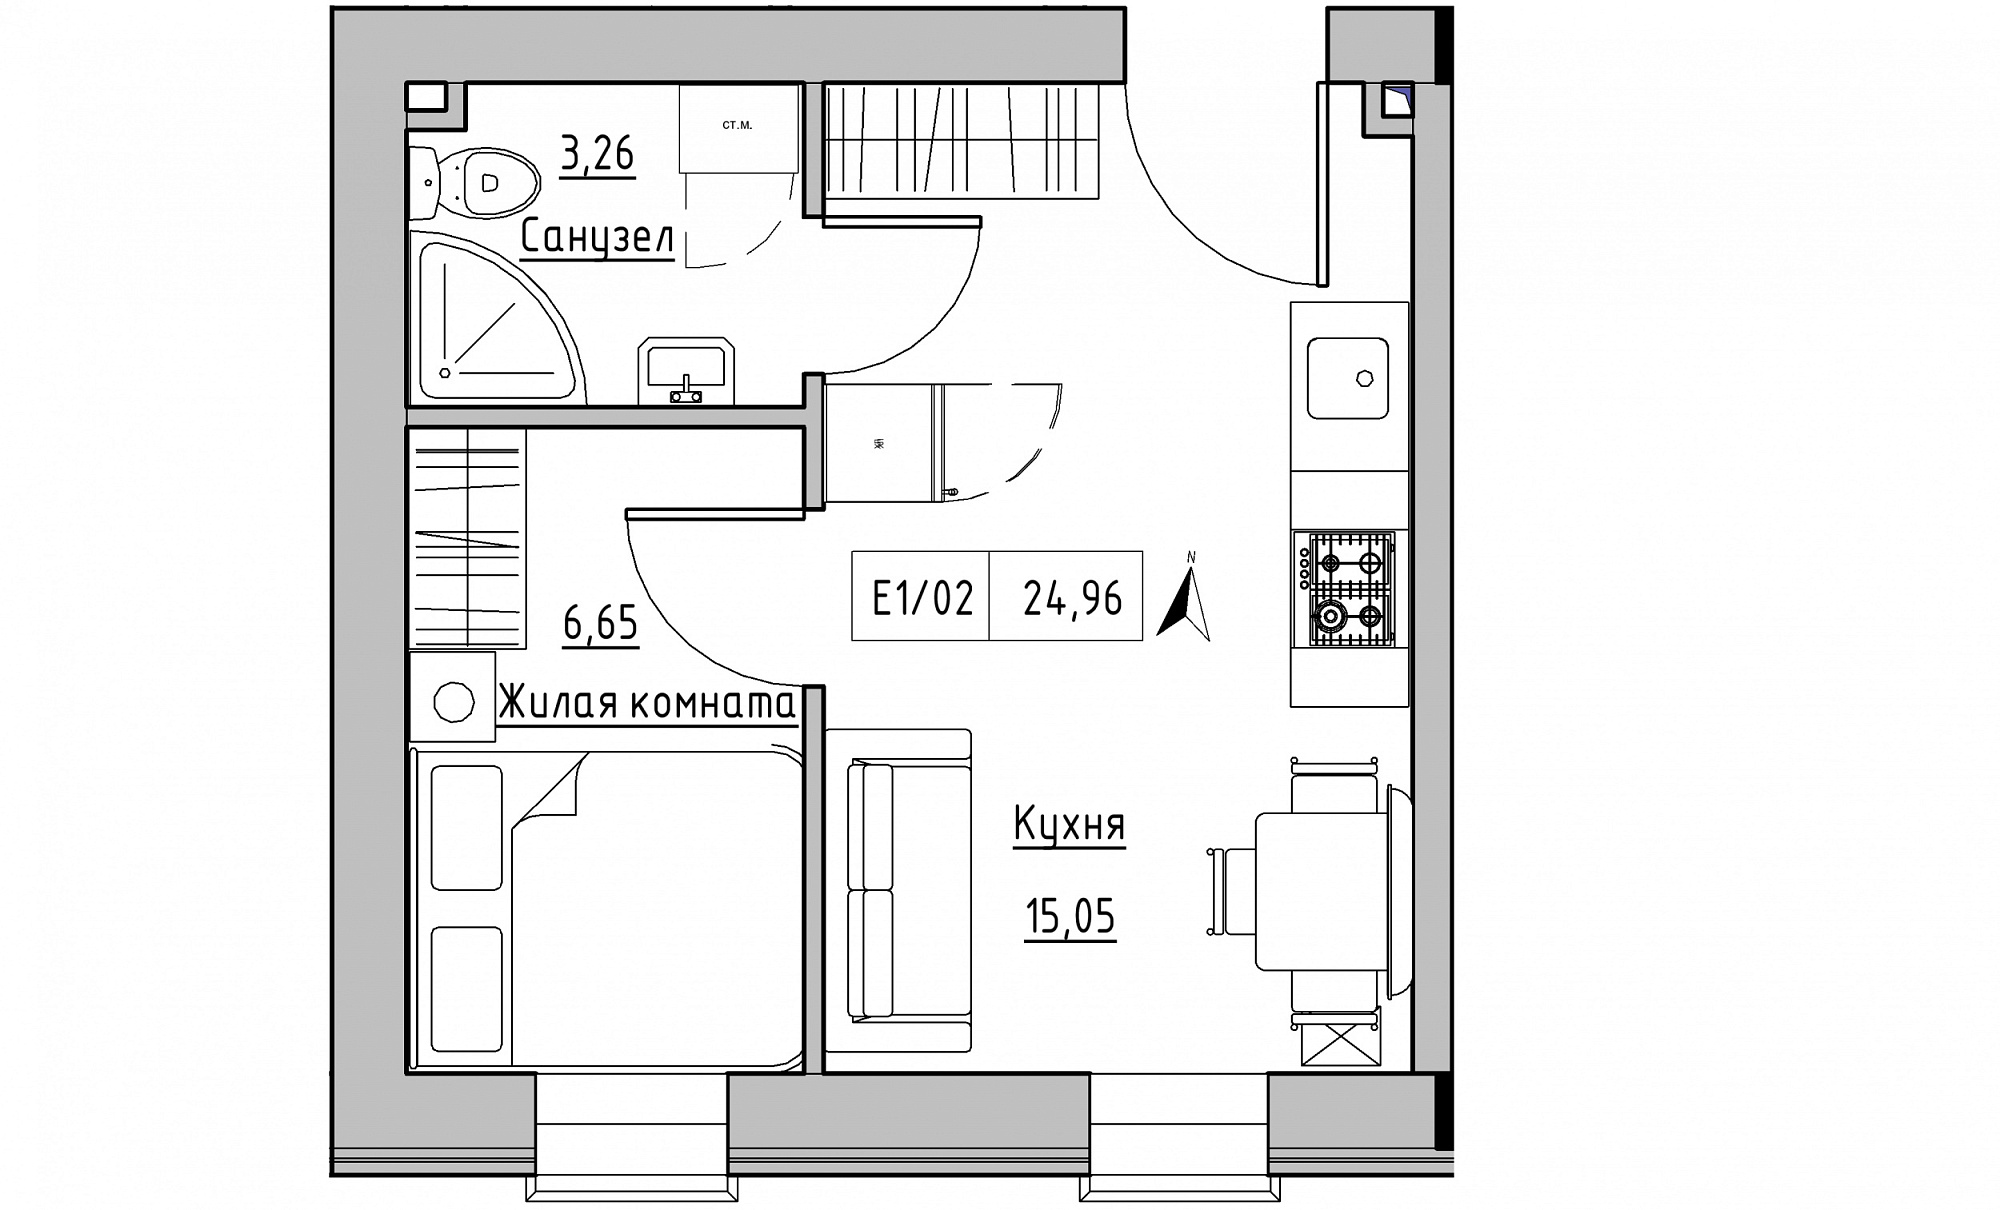 Планування 1-к квартира площею 24.96м2, KS-015-02/0012.